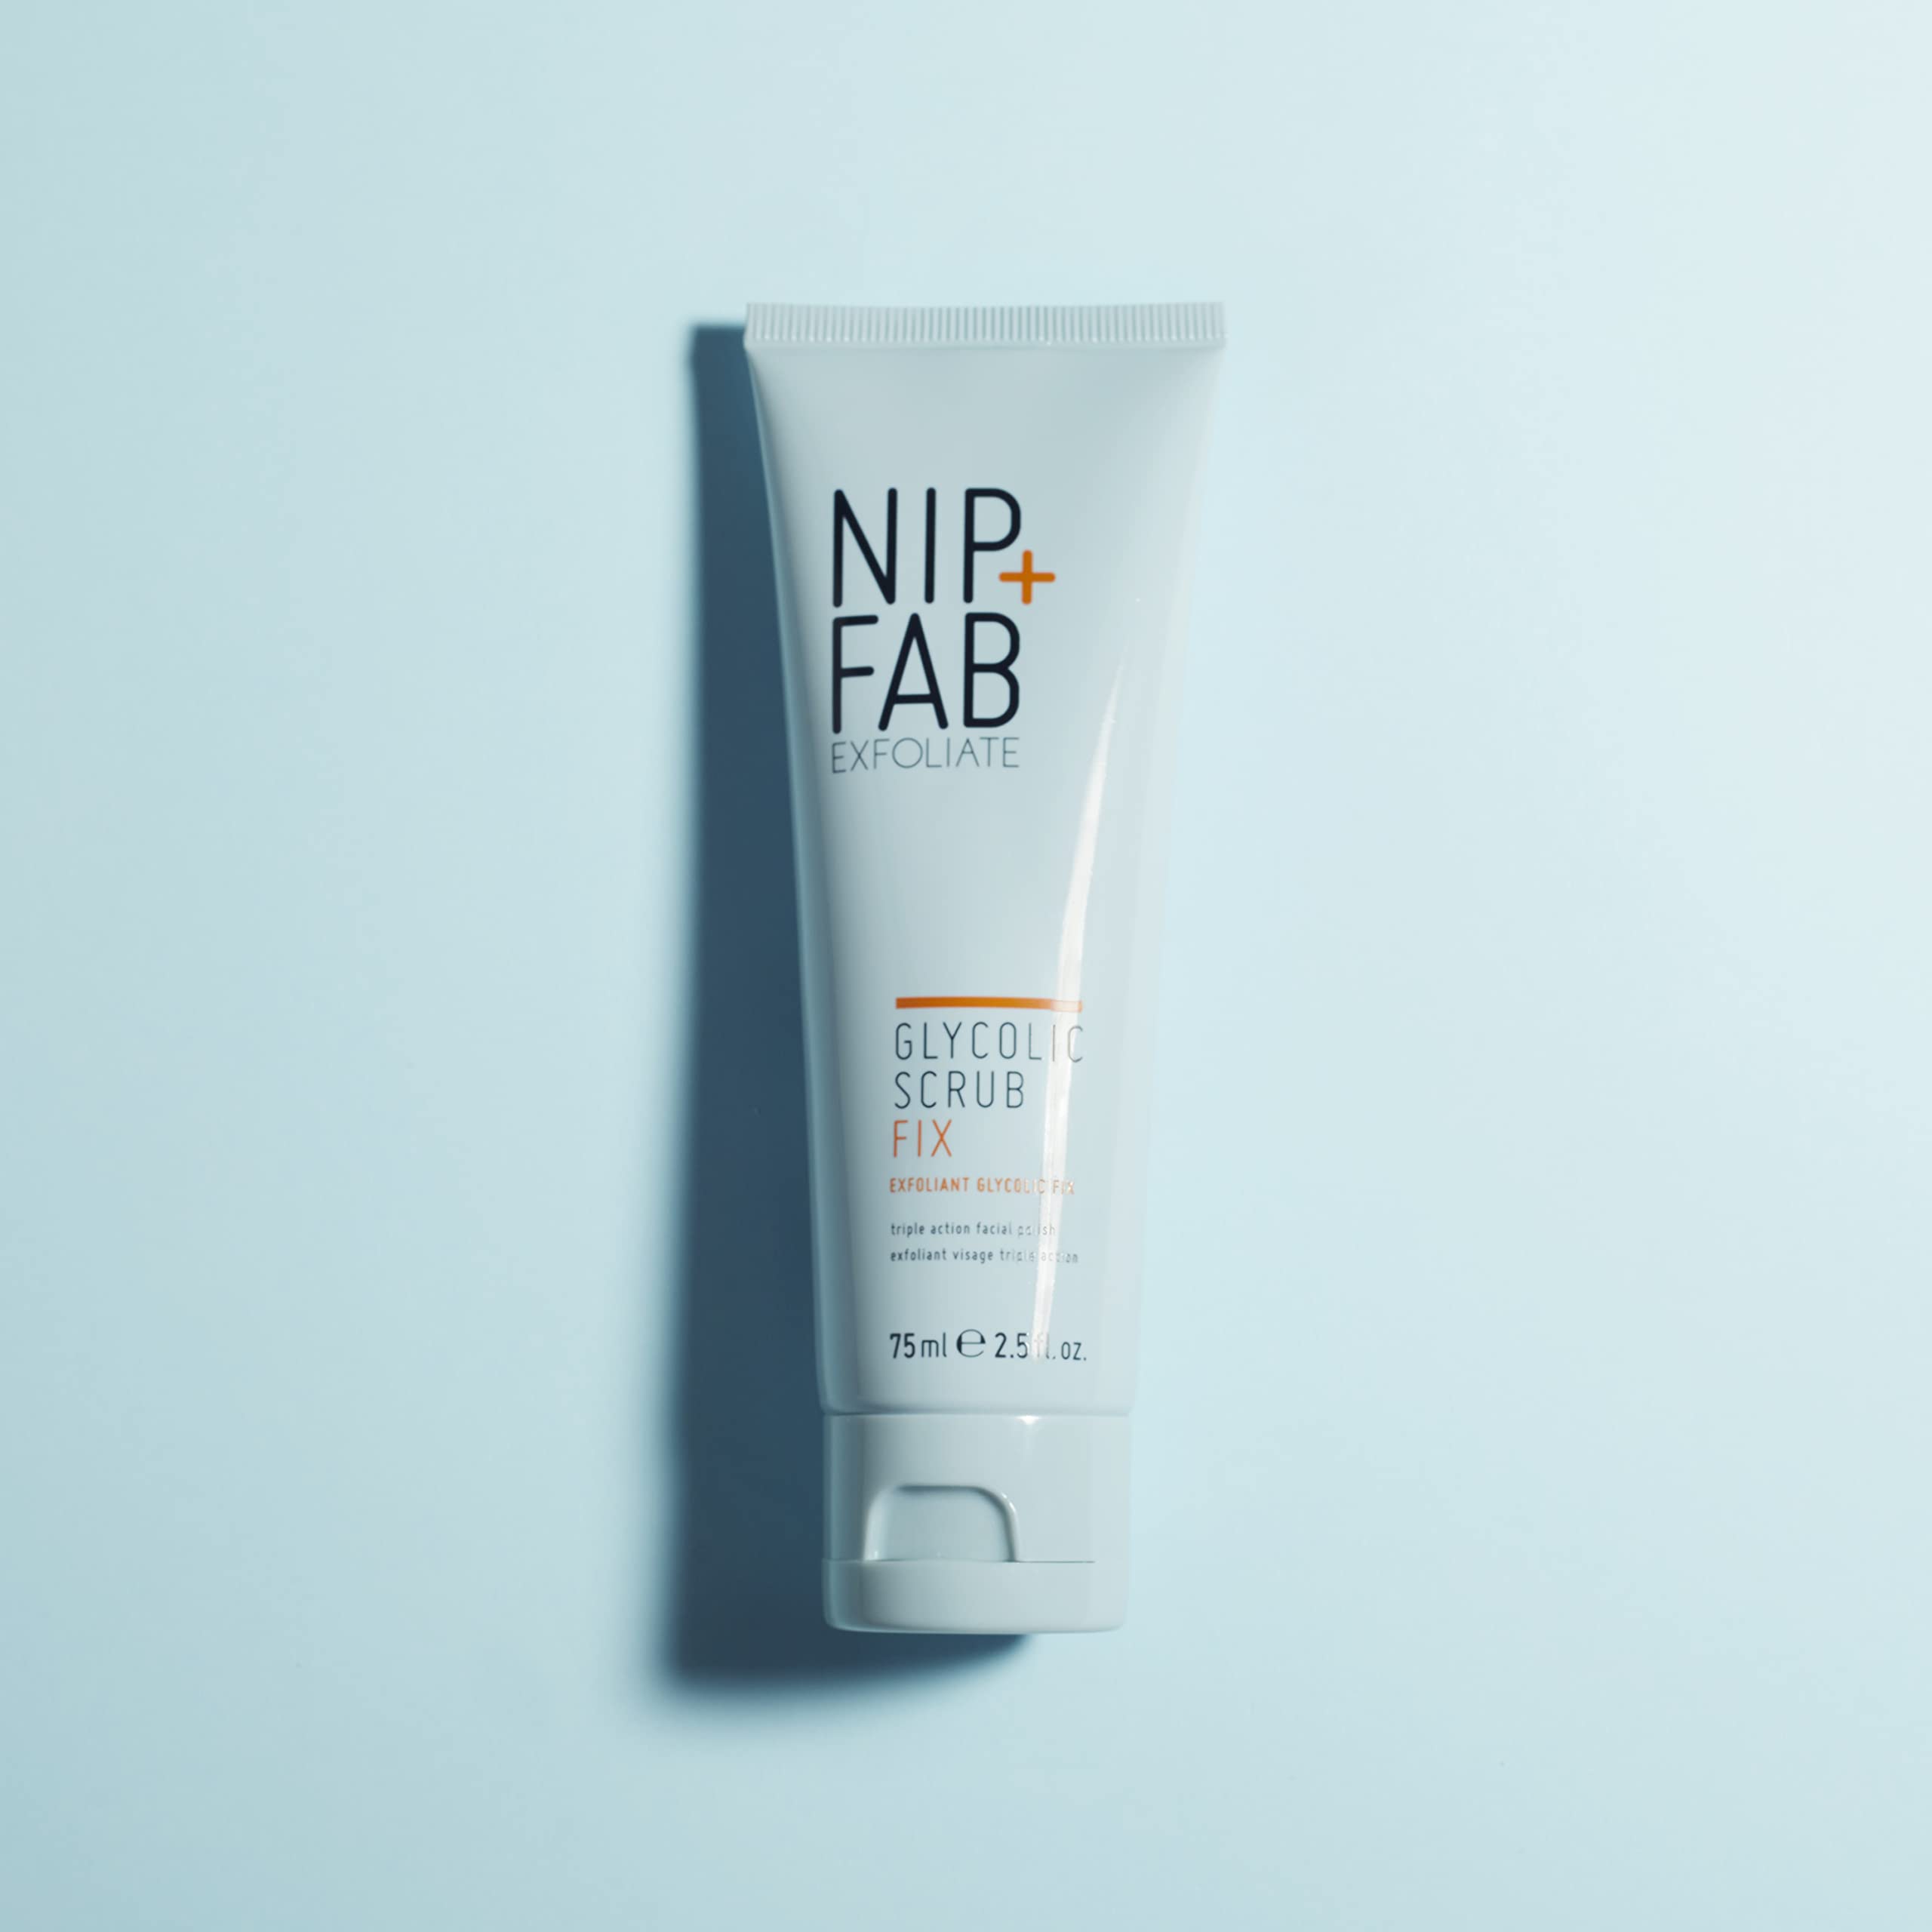 Nip + Fab Glycolic Acid Fix Face Scrub with Salicylic Acid, AHA/BHA Exfoliating Facial Cleanser Polish for Refining Pores Skin Brightening, 75 ml 2.5 fl oz